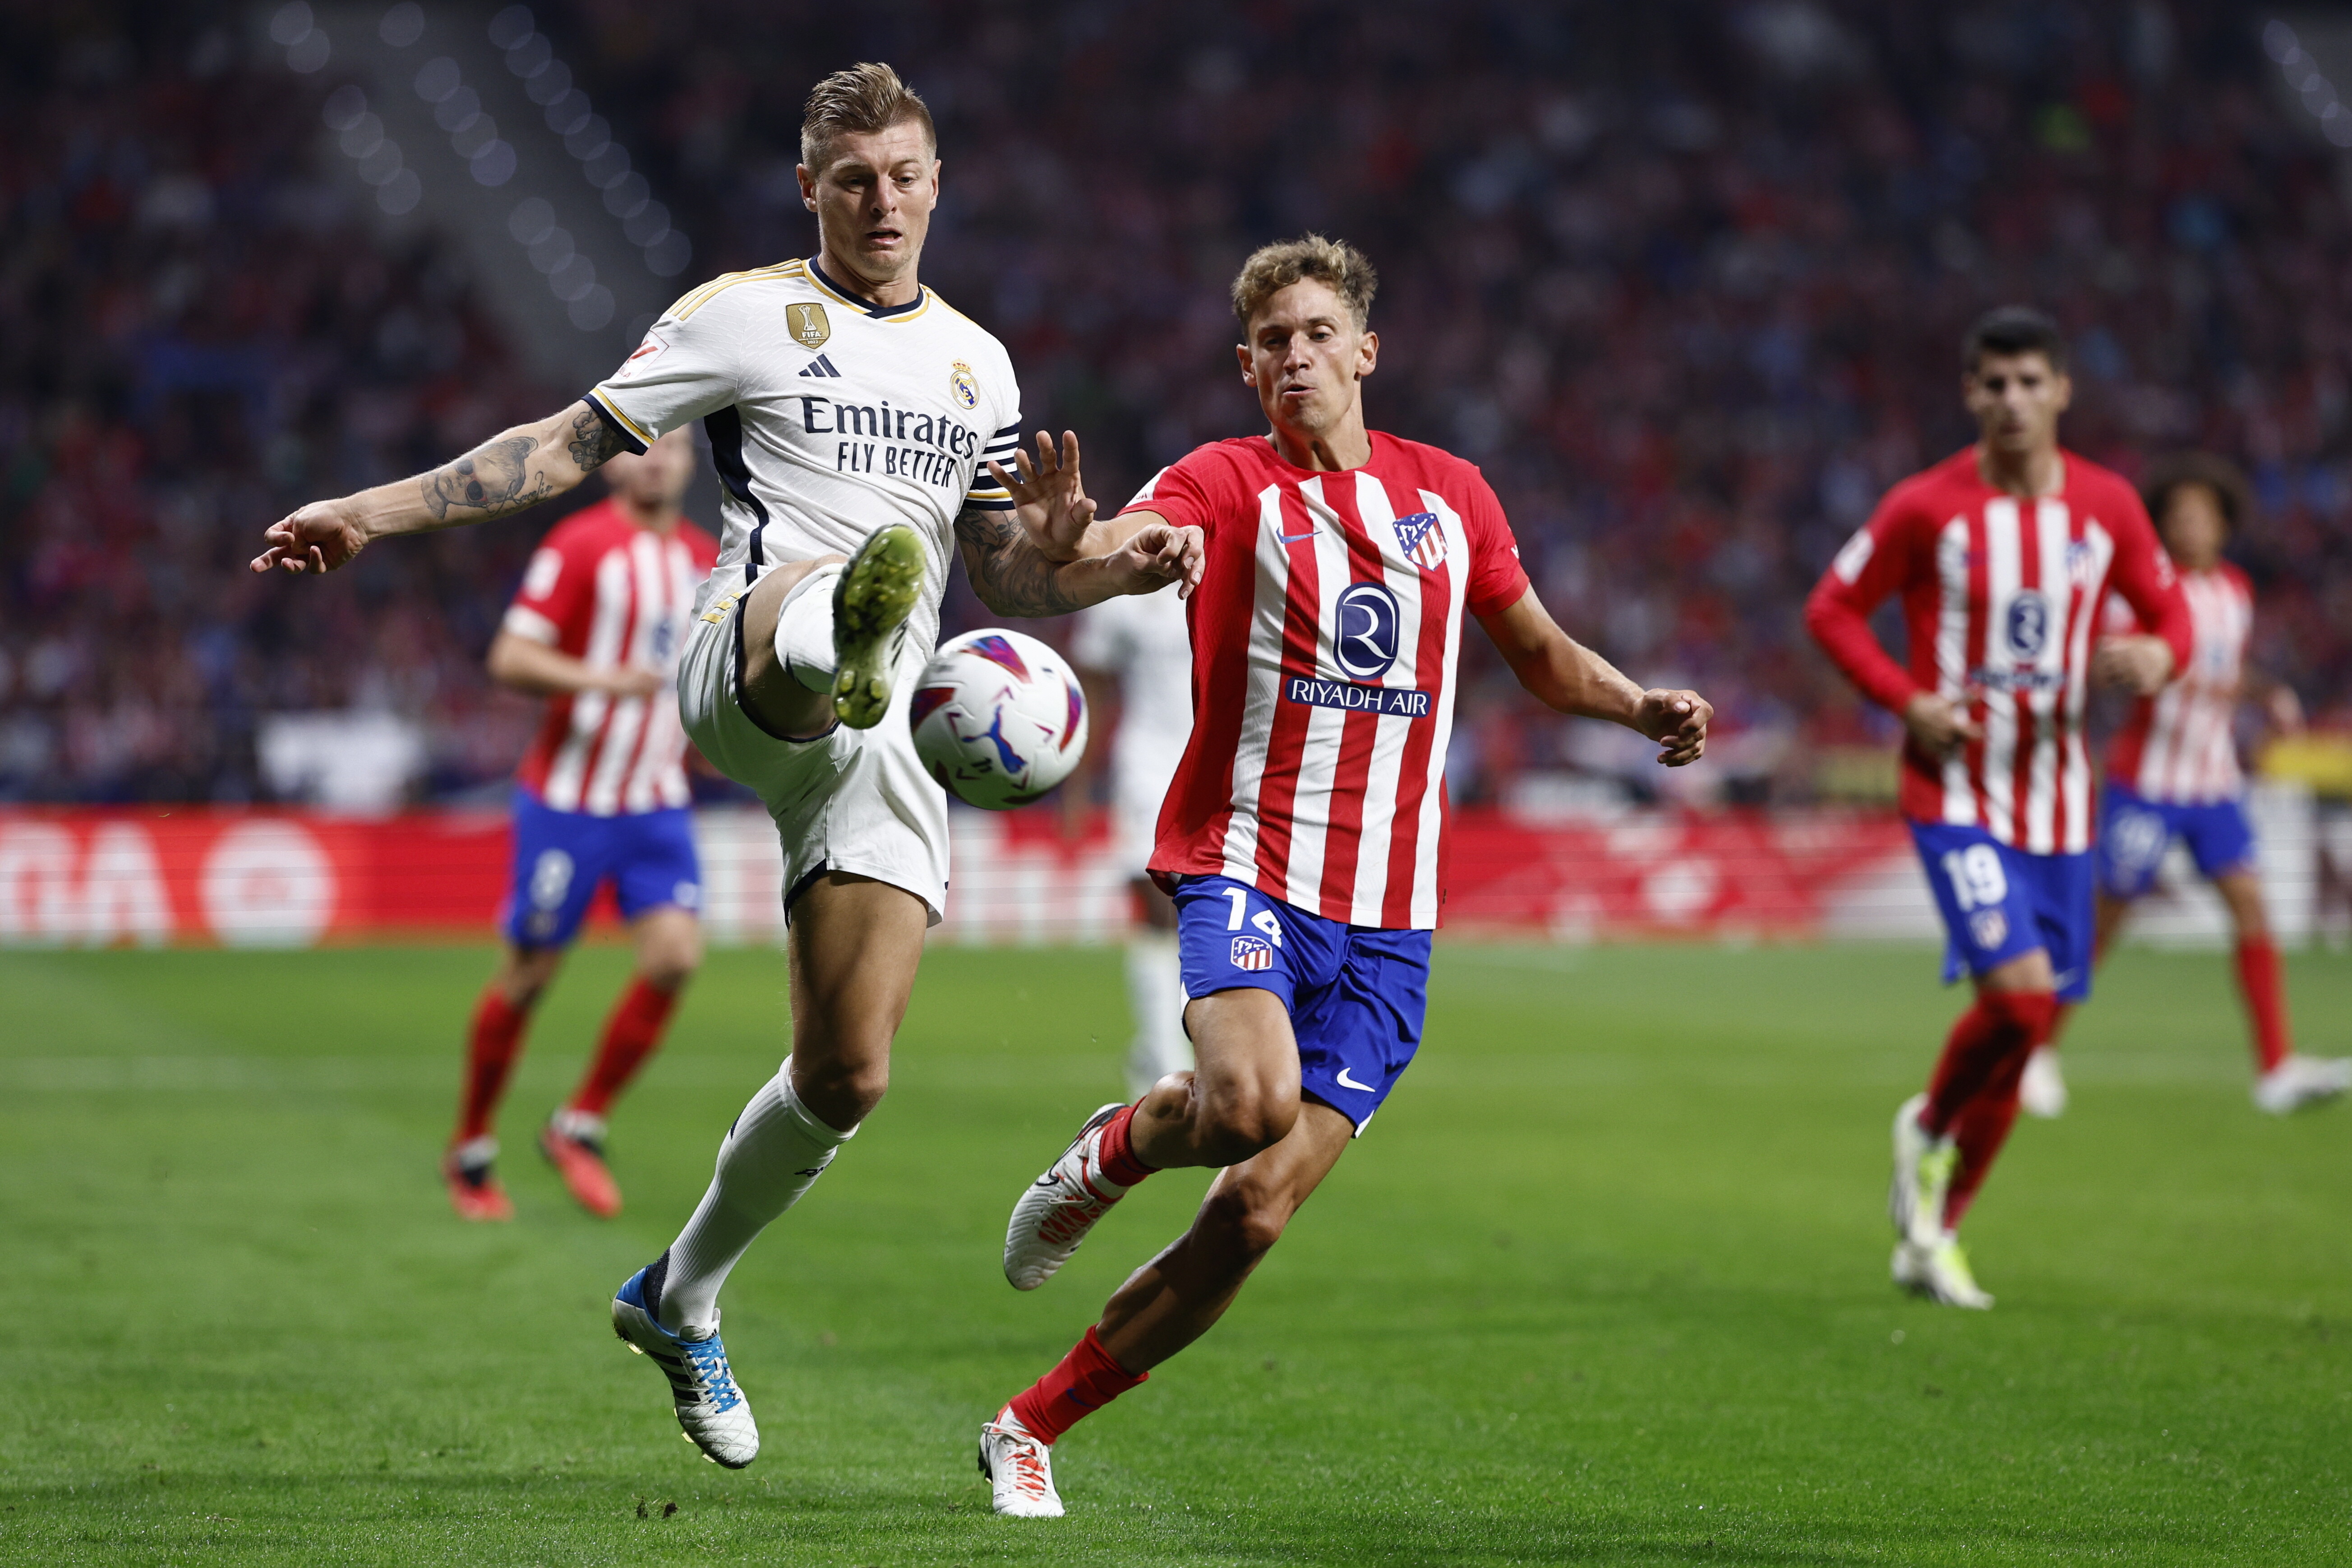 ¡El Atlético frena al Real Madrid!  Cuatro goles en el derbi